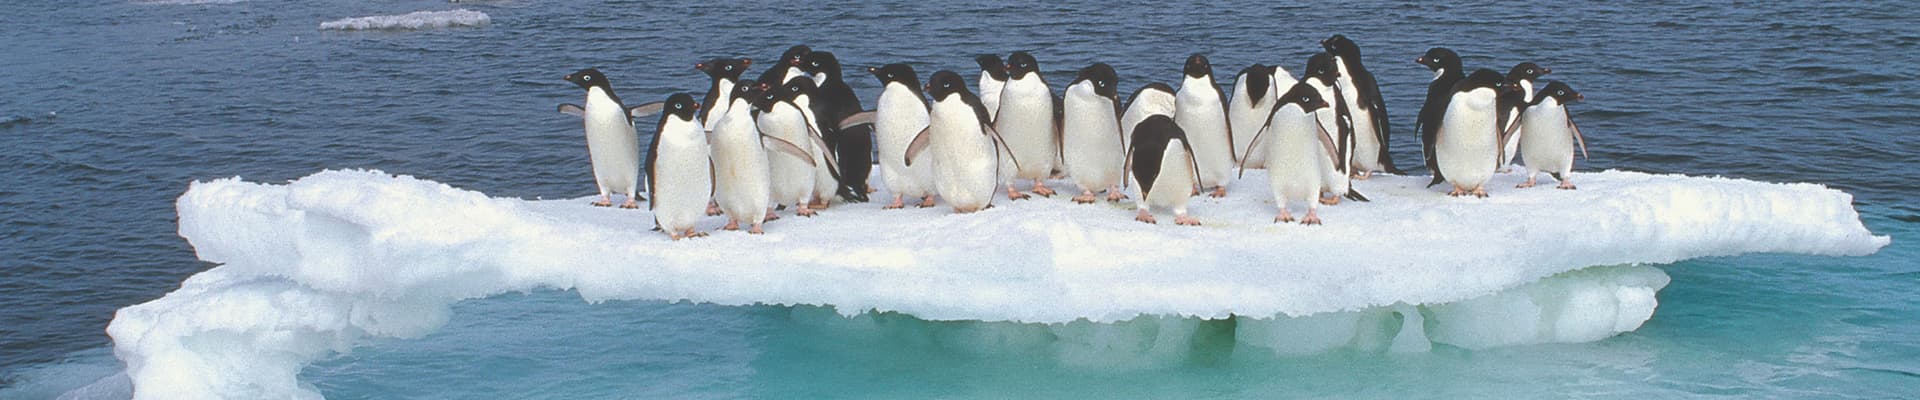 Una colonia di pinguini di Adelia (Pygoscelis adeliae) si accalca sul residuo di un lastrone di ghiaccio in scioglimento durante il periodo estivo